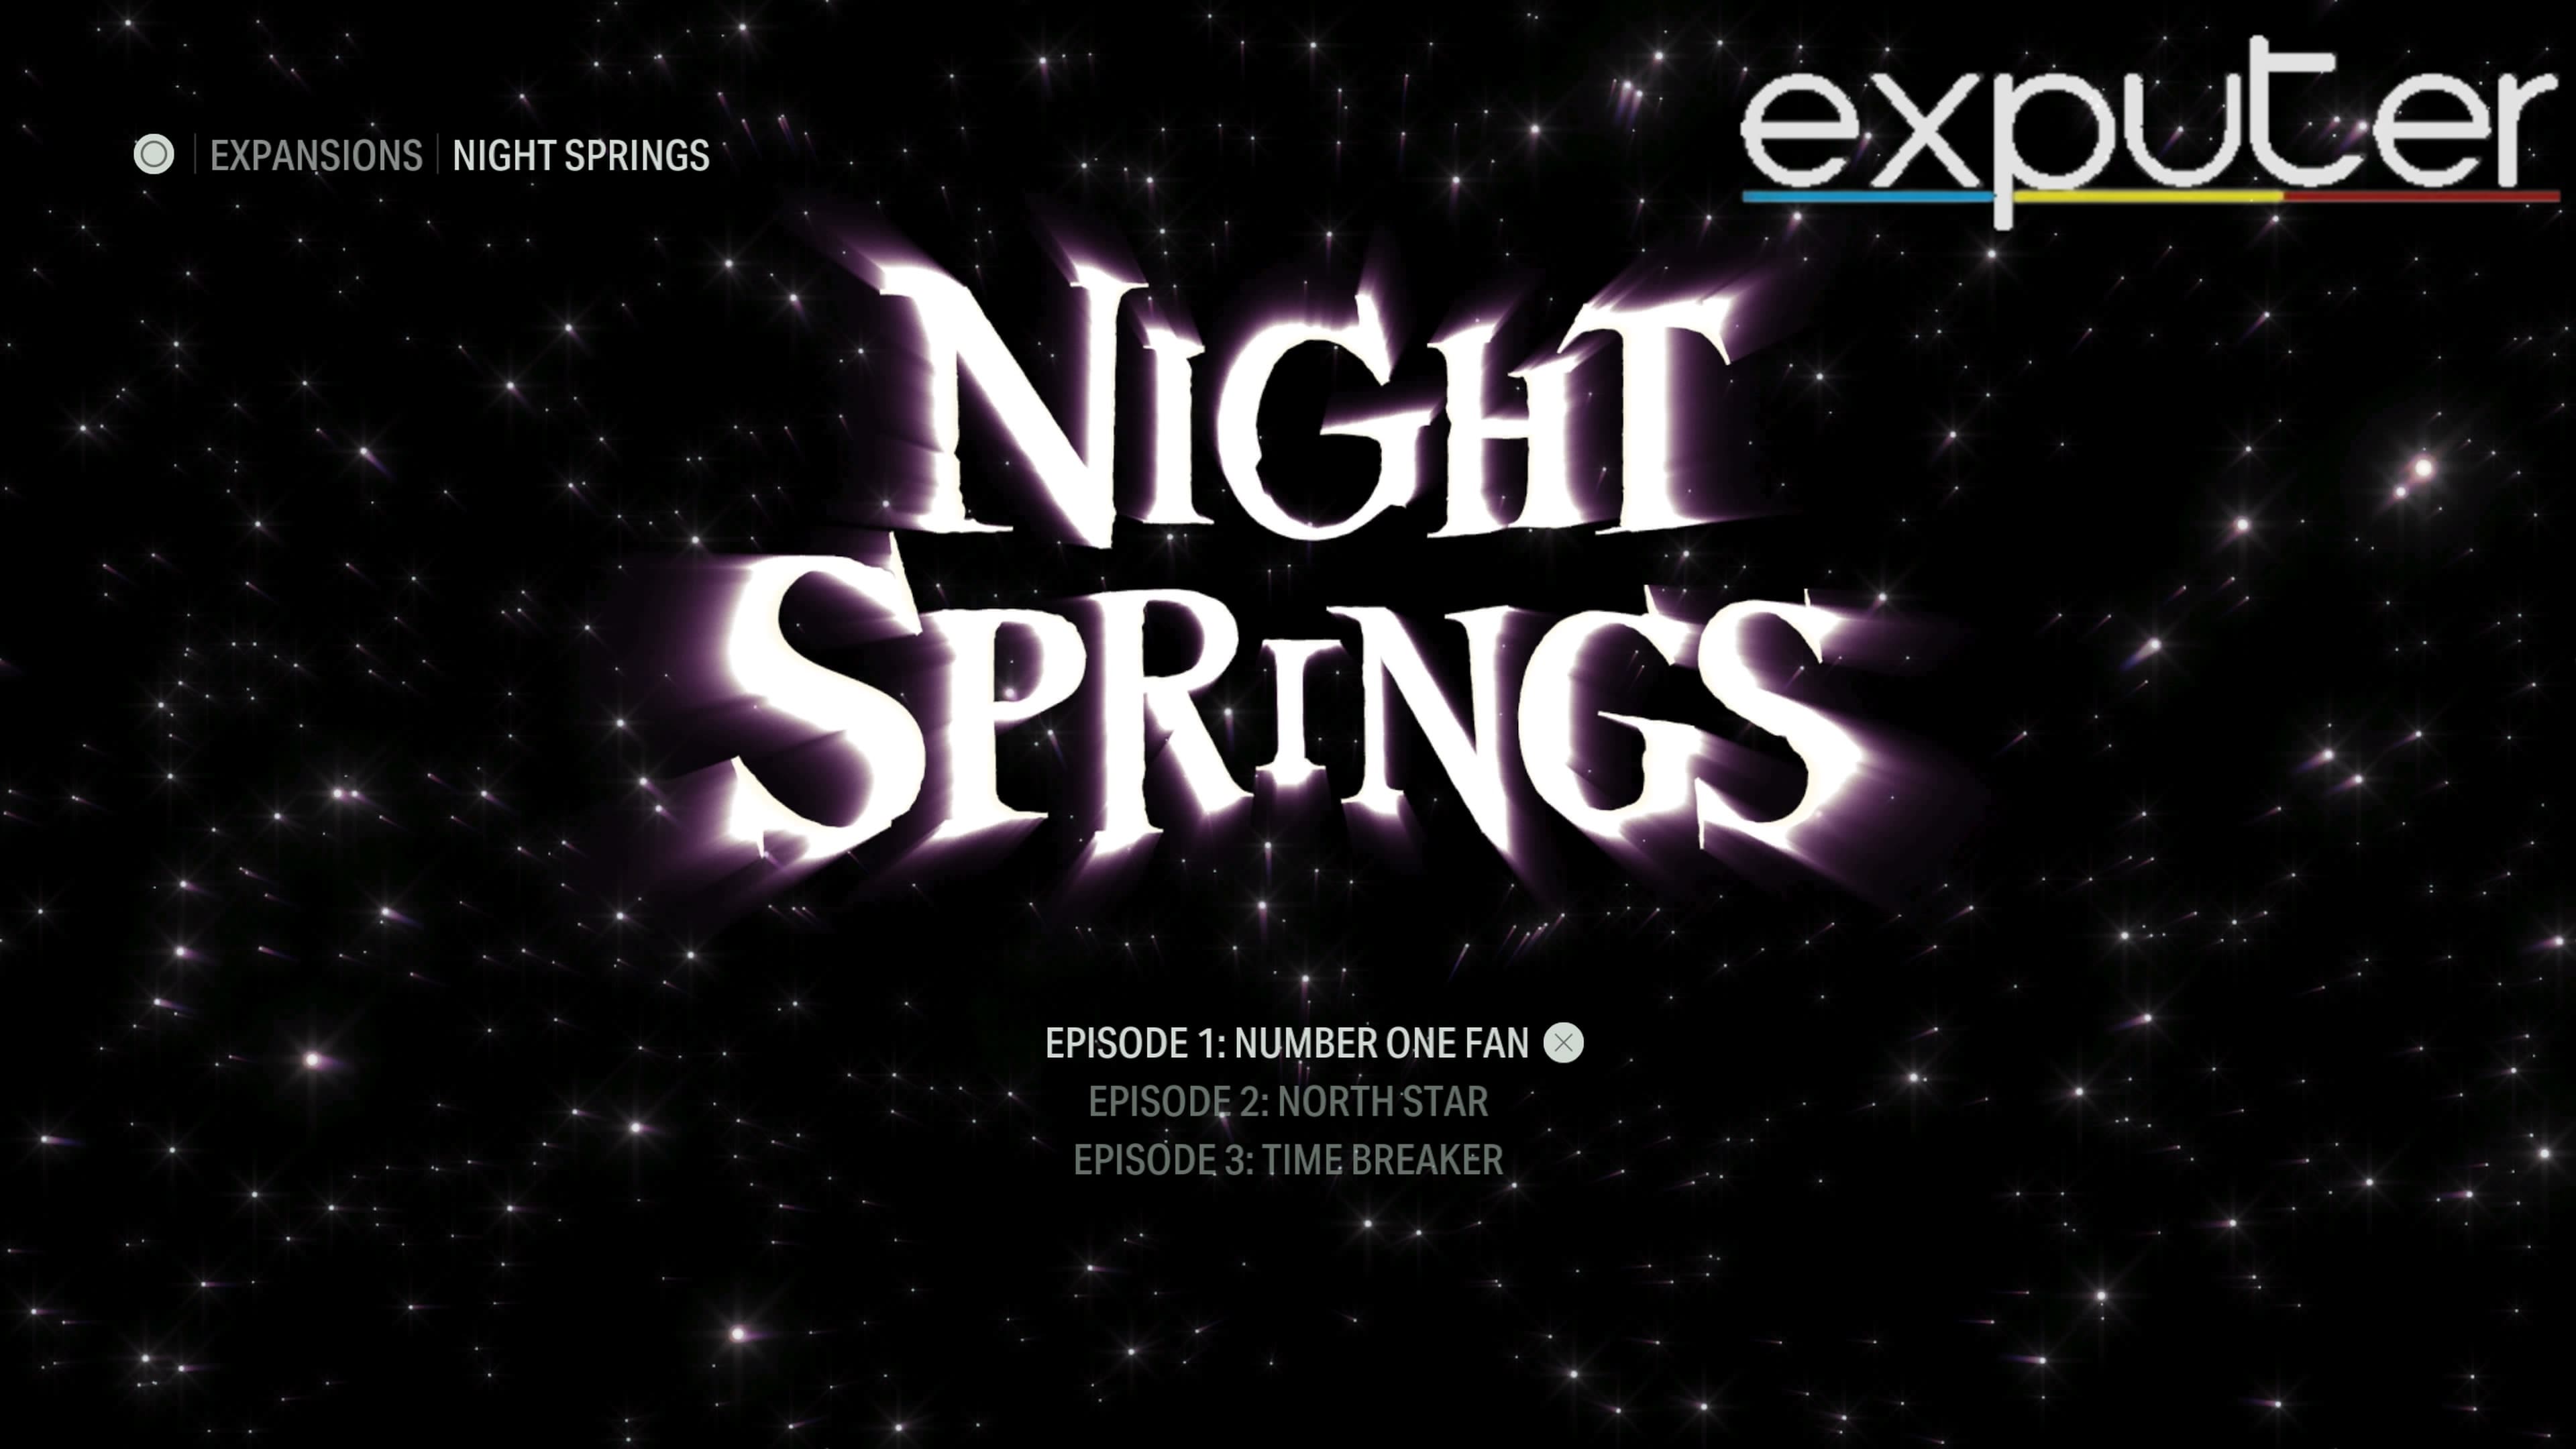 story of night springs